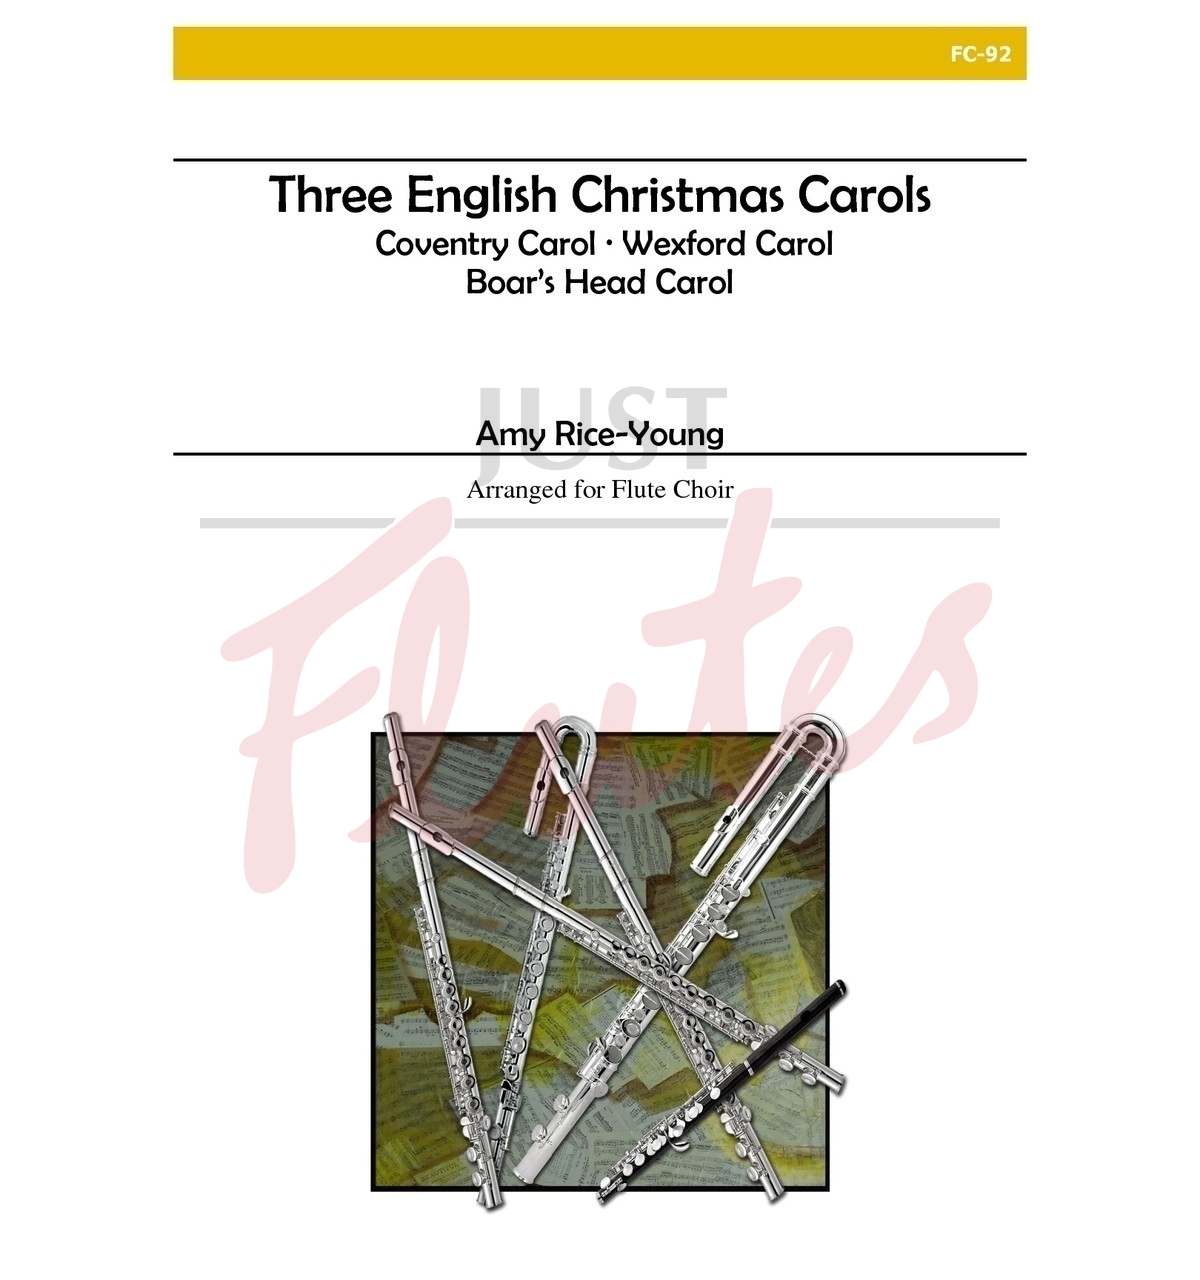 Three English Christmas Carols